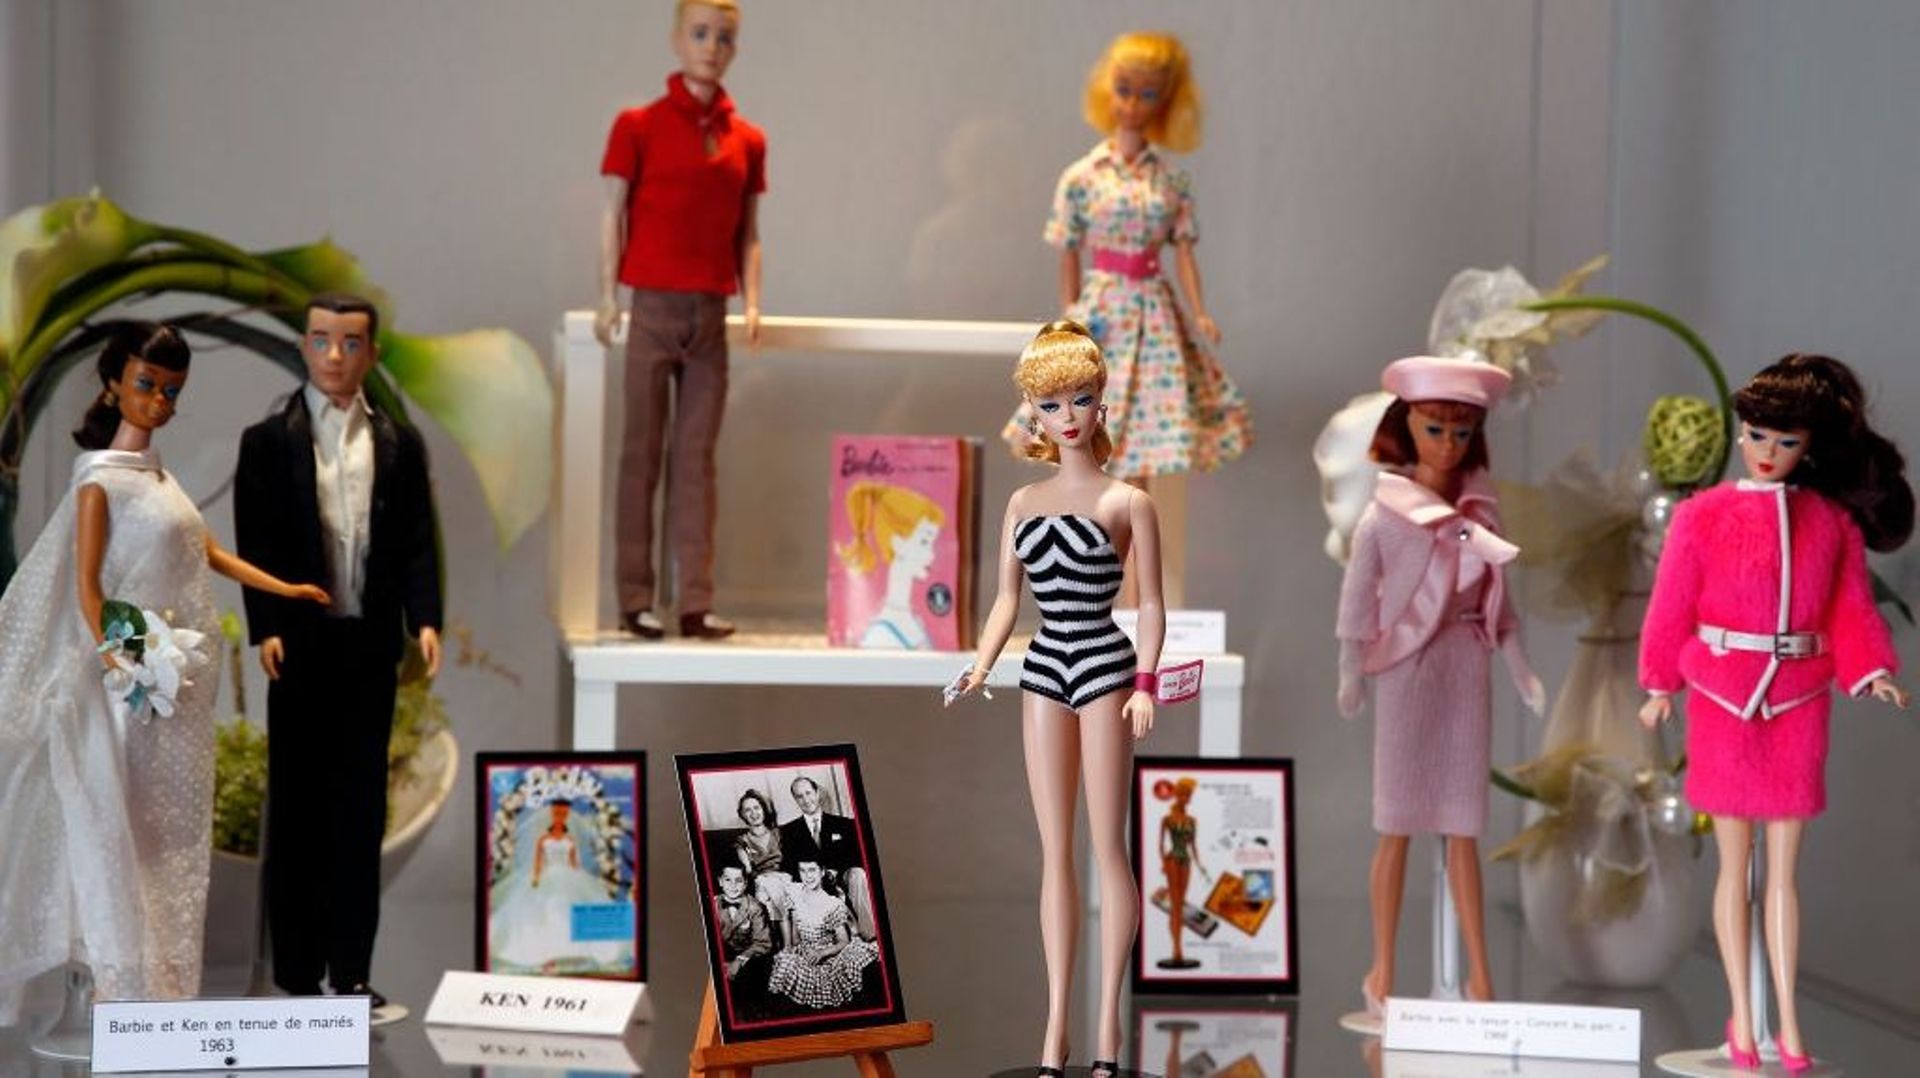 Comment Bild Lilli a donné naissance à Barbie avant de tomber dans l'oubli